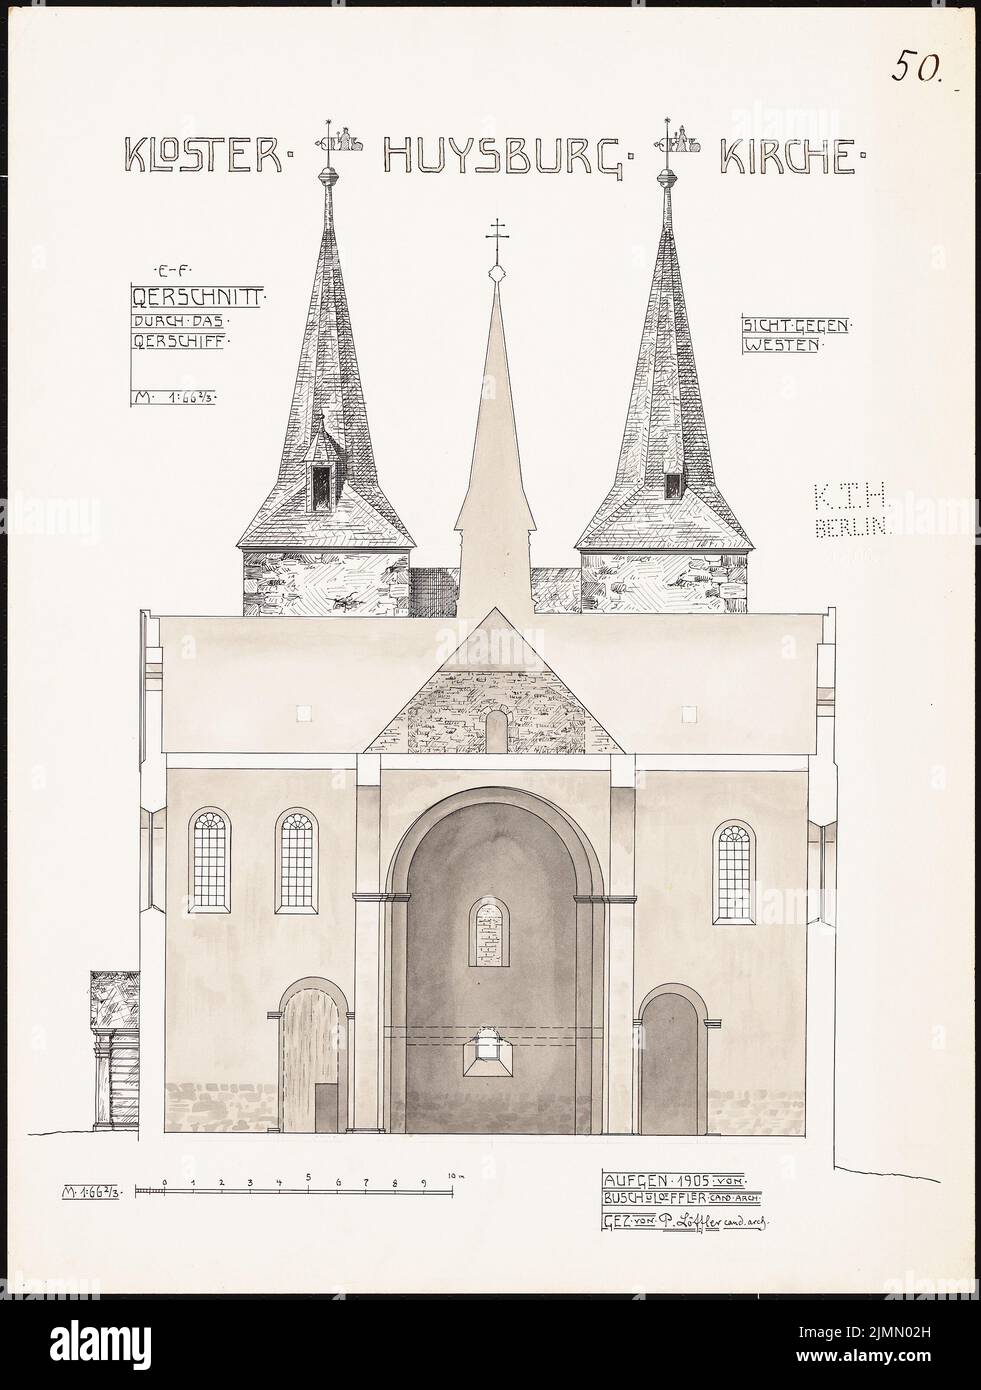 Löffler Paul, Klosterkirche Huysburg (1905): Coupe transversale du transept 1:66. Tuche aquarelle sur la boîte, 67,5 x 50,9 cm (y compris les bords de numérisation) Banque D'Images